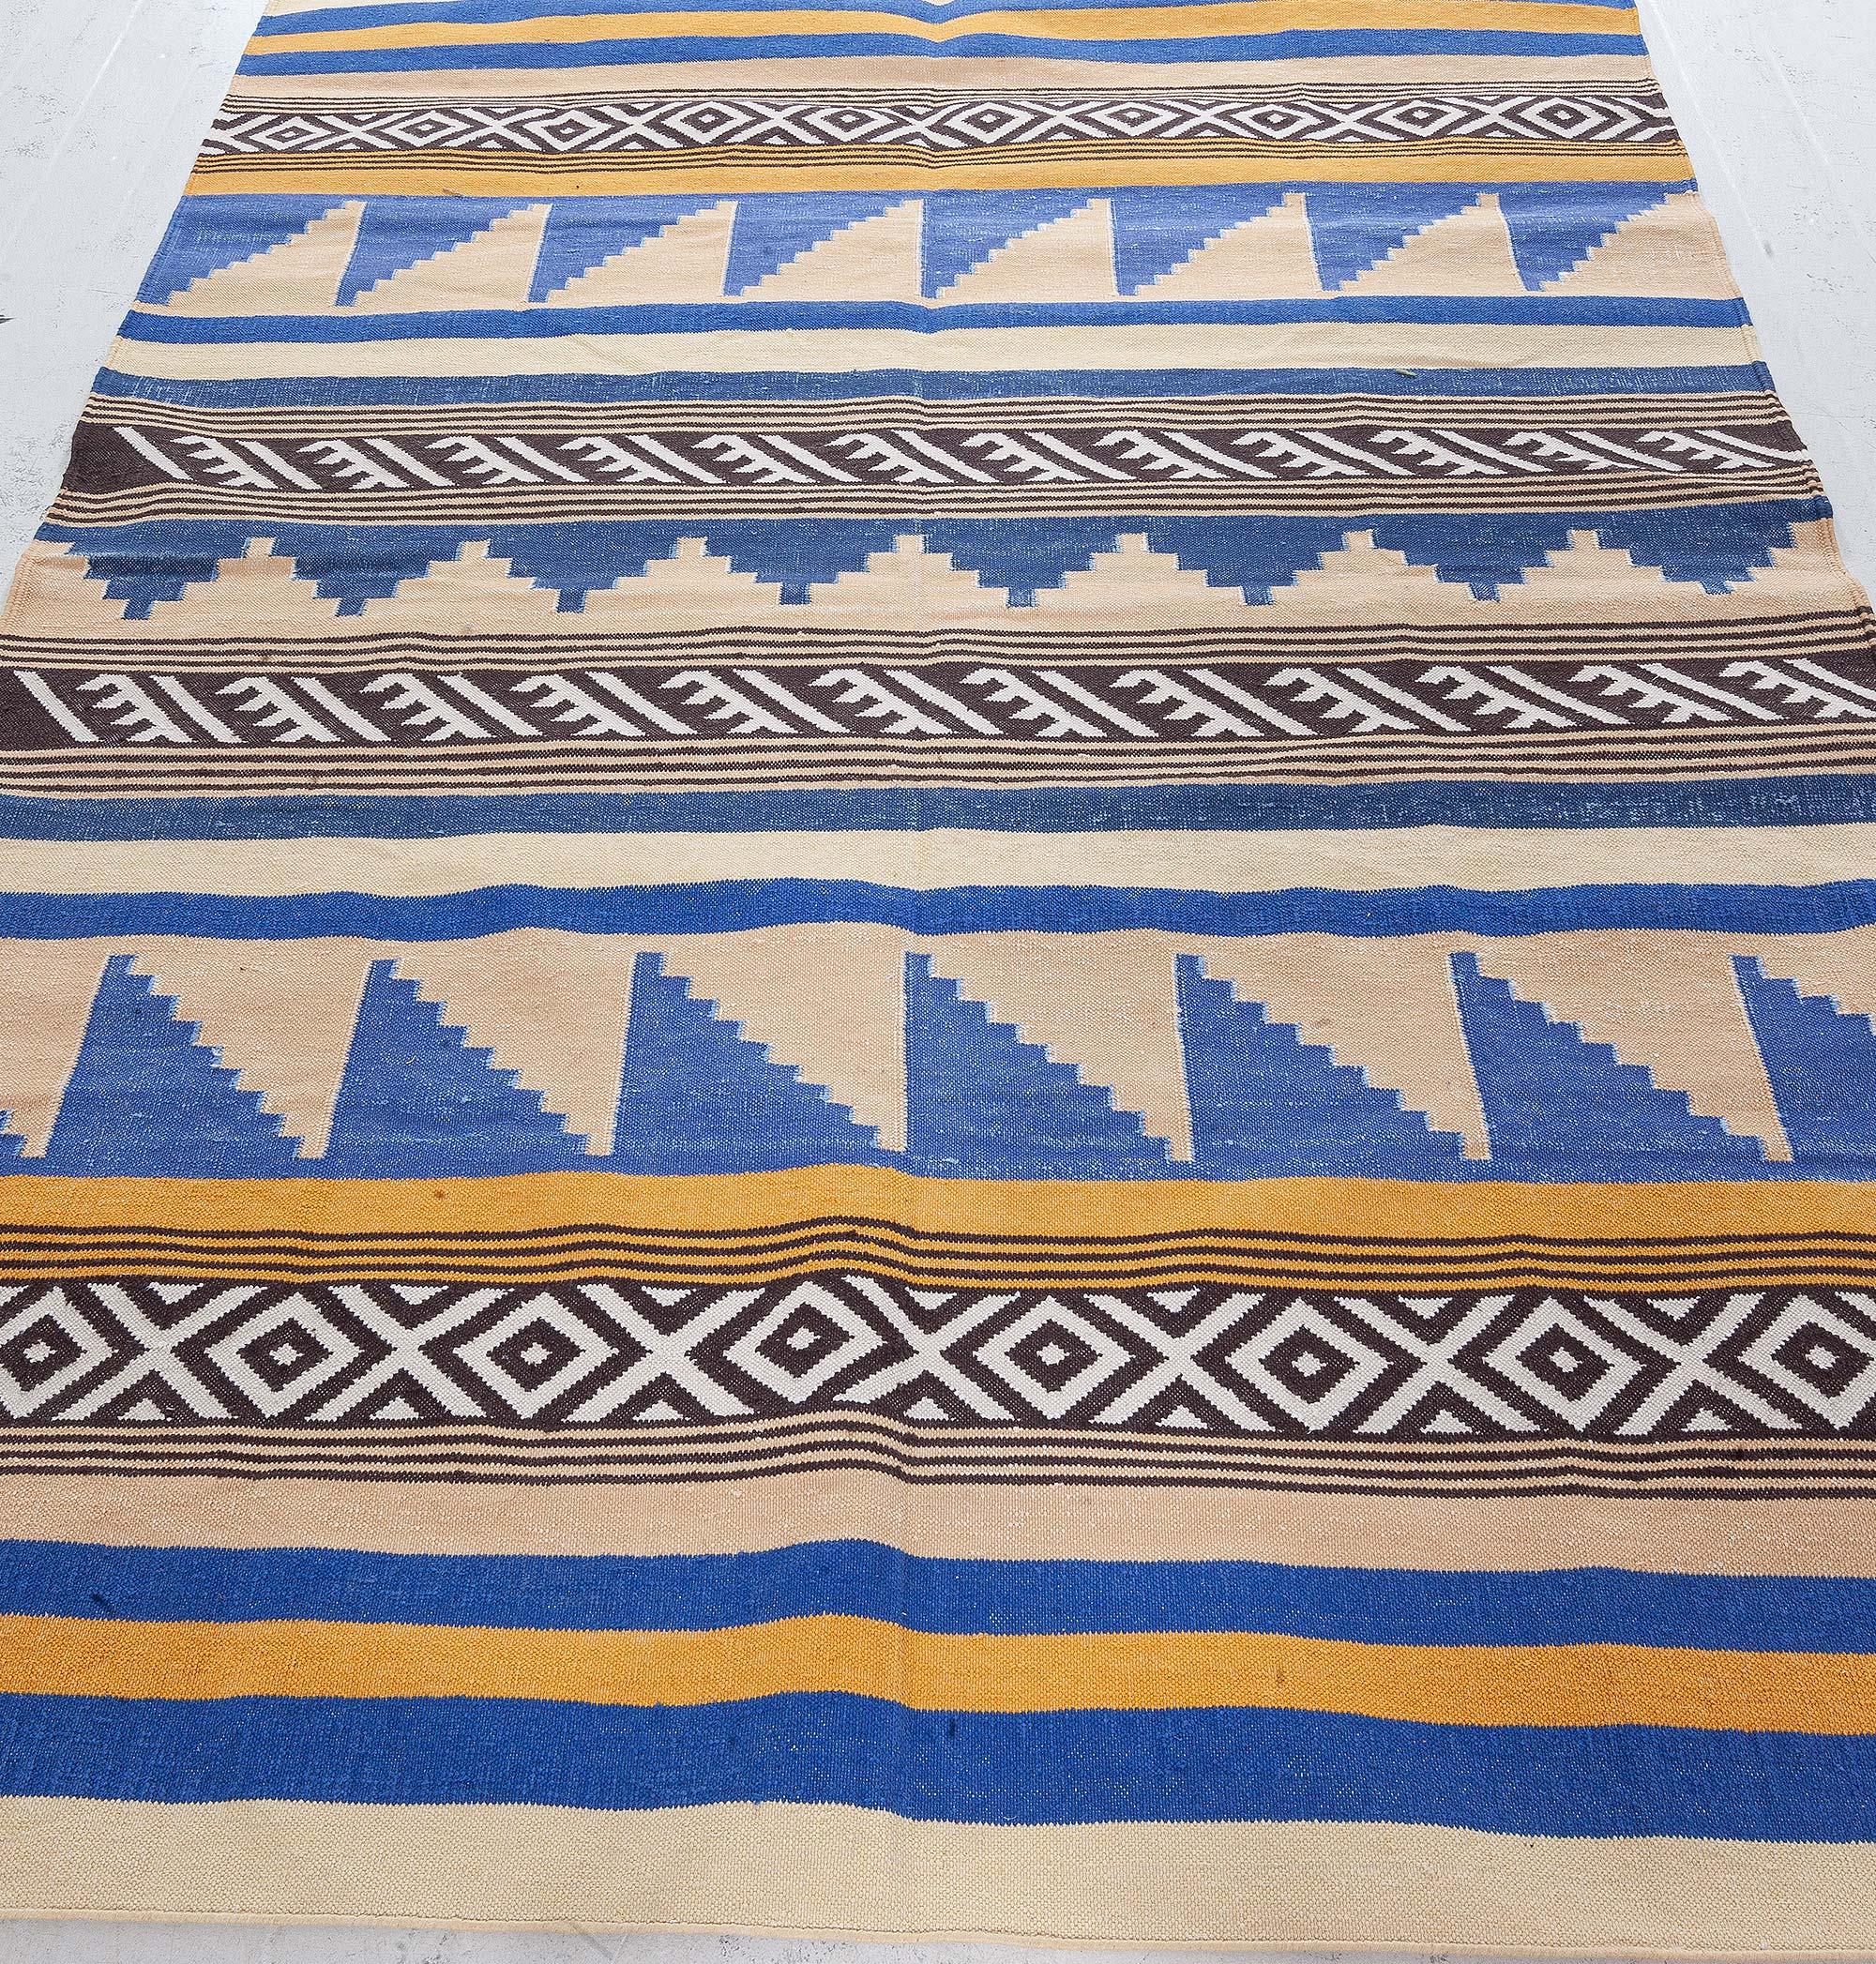 Moderner indischer Dhurrie-Teppich von Doris Leslie Blau
Größe: 4'0